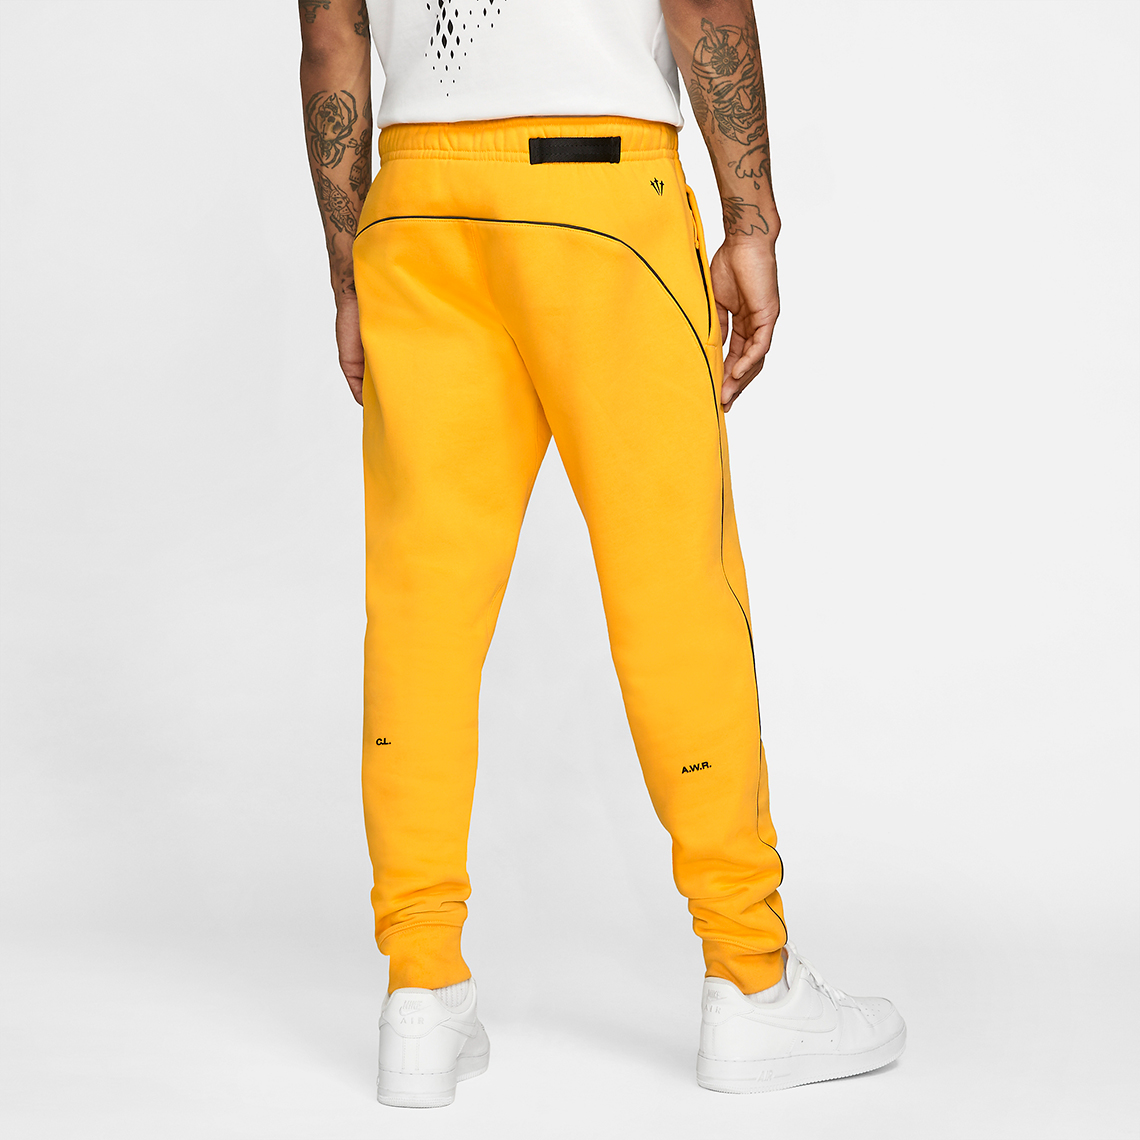 Drake Nike Nocta Pants Yellow Da3935 739 2